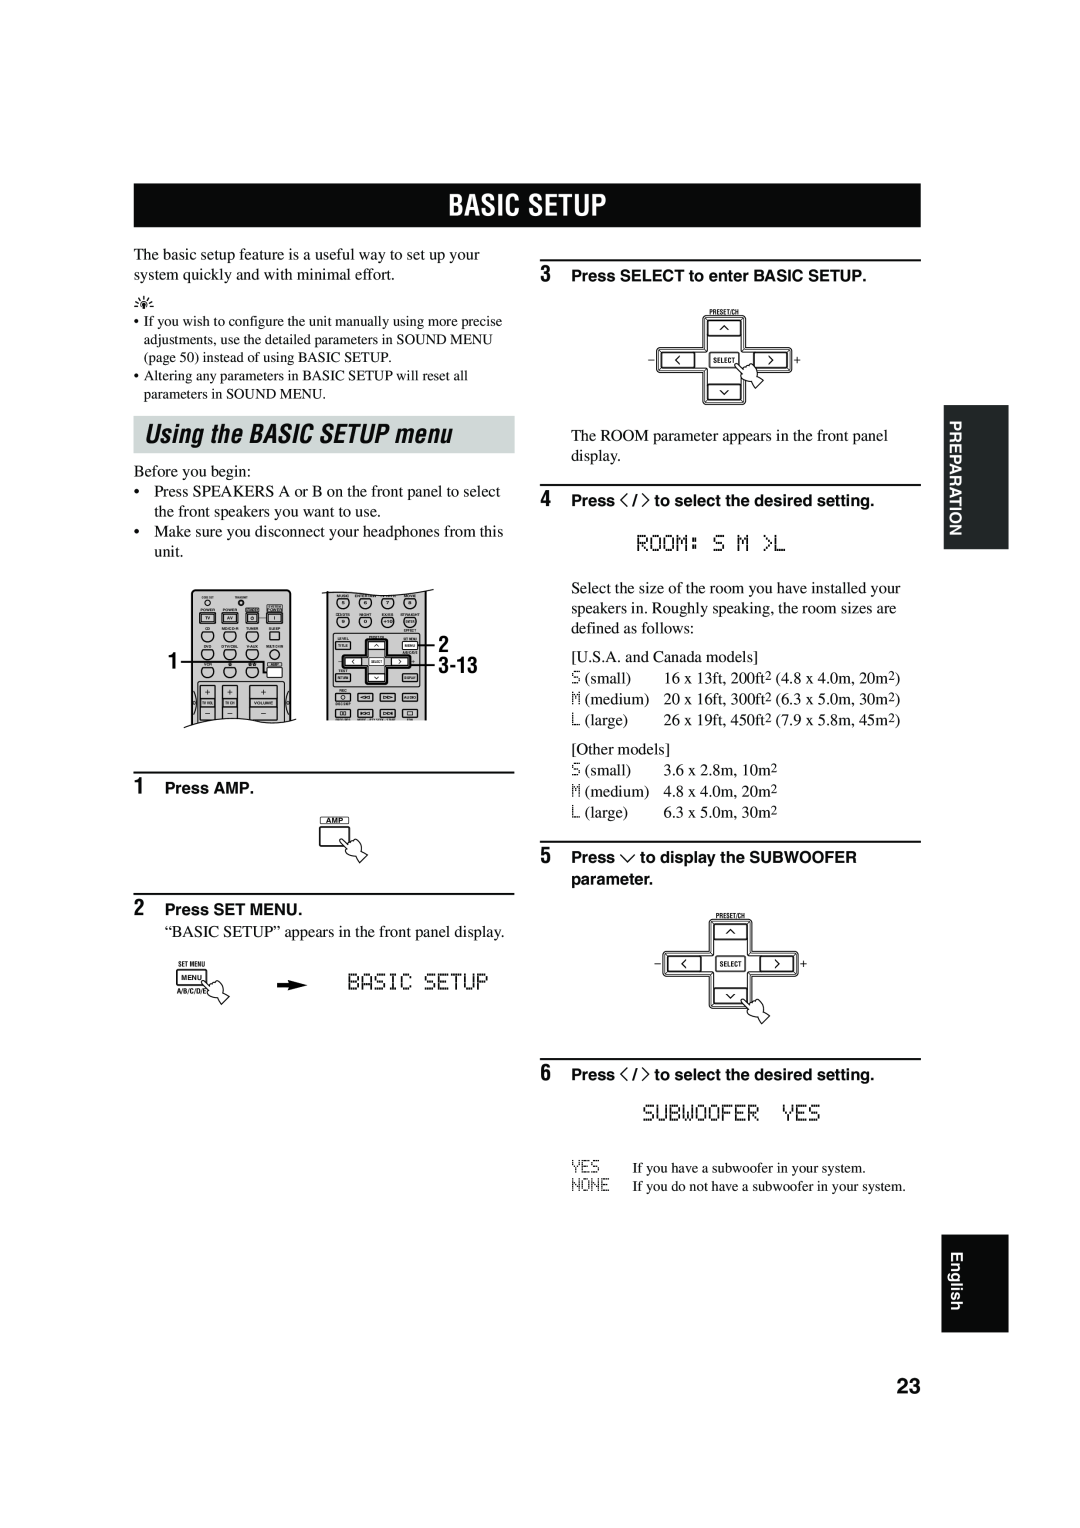 Yamaha RX-V550 Basic Setup, Using the BASIC SETUP menu, Room S M L, Subwoofer Yes, 3-13, Press SELECT to enter BASIC SETUP 